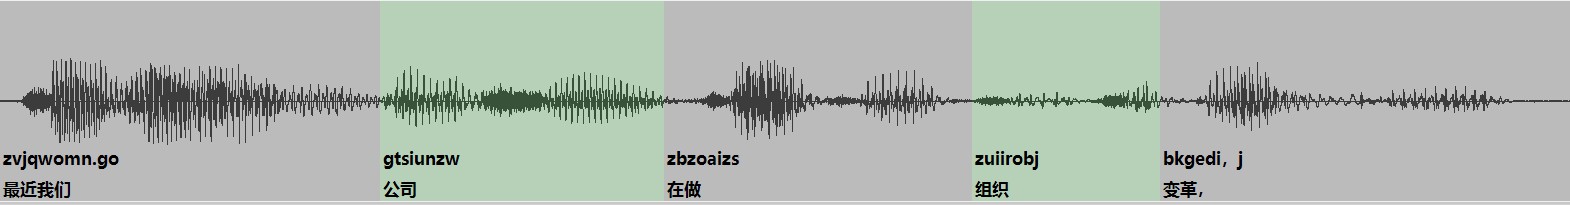 音码语音识别系统识别的汉字与声纹位置精确对应